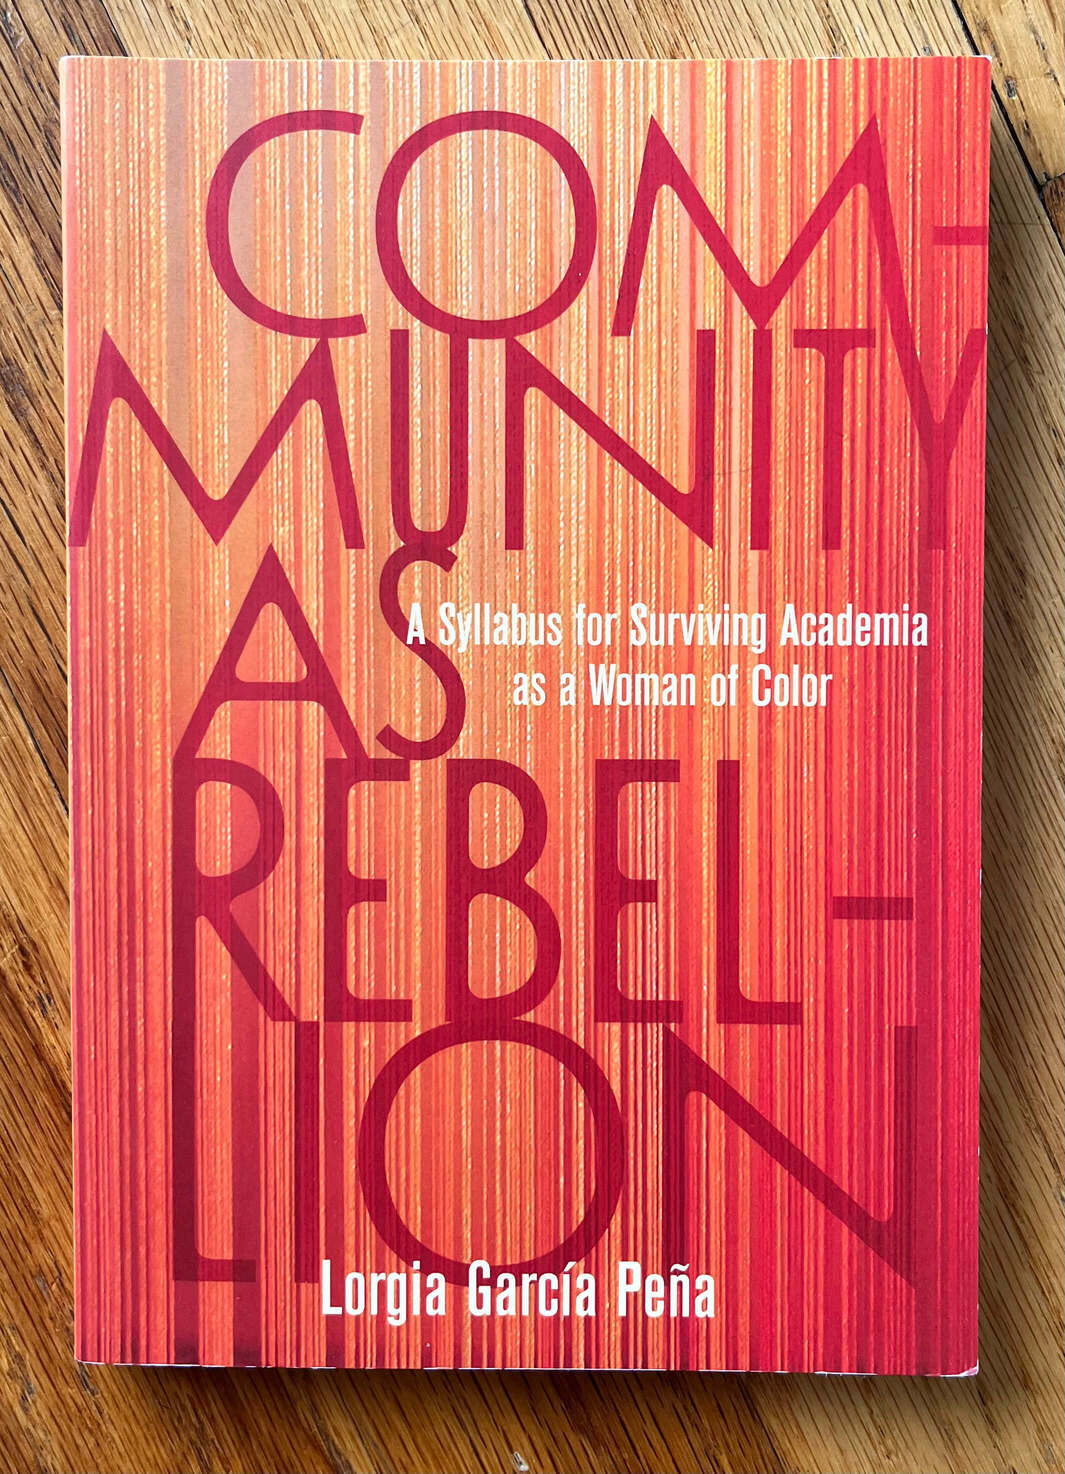 “Community as Rebellion: A Syllabus for Surviving Acedemia as a Woman of Color” by Lorgia García Peña